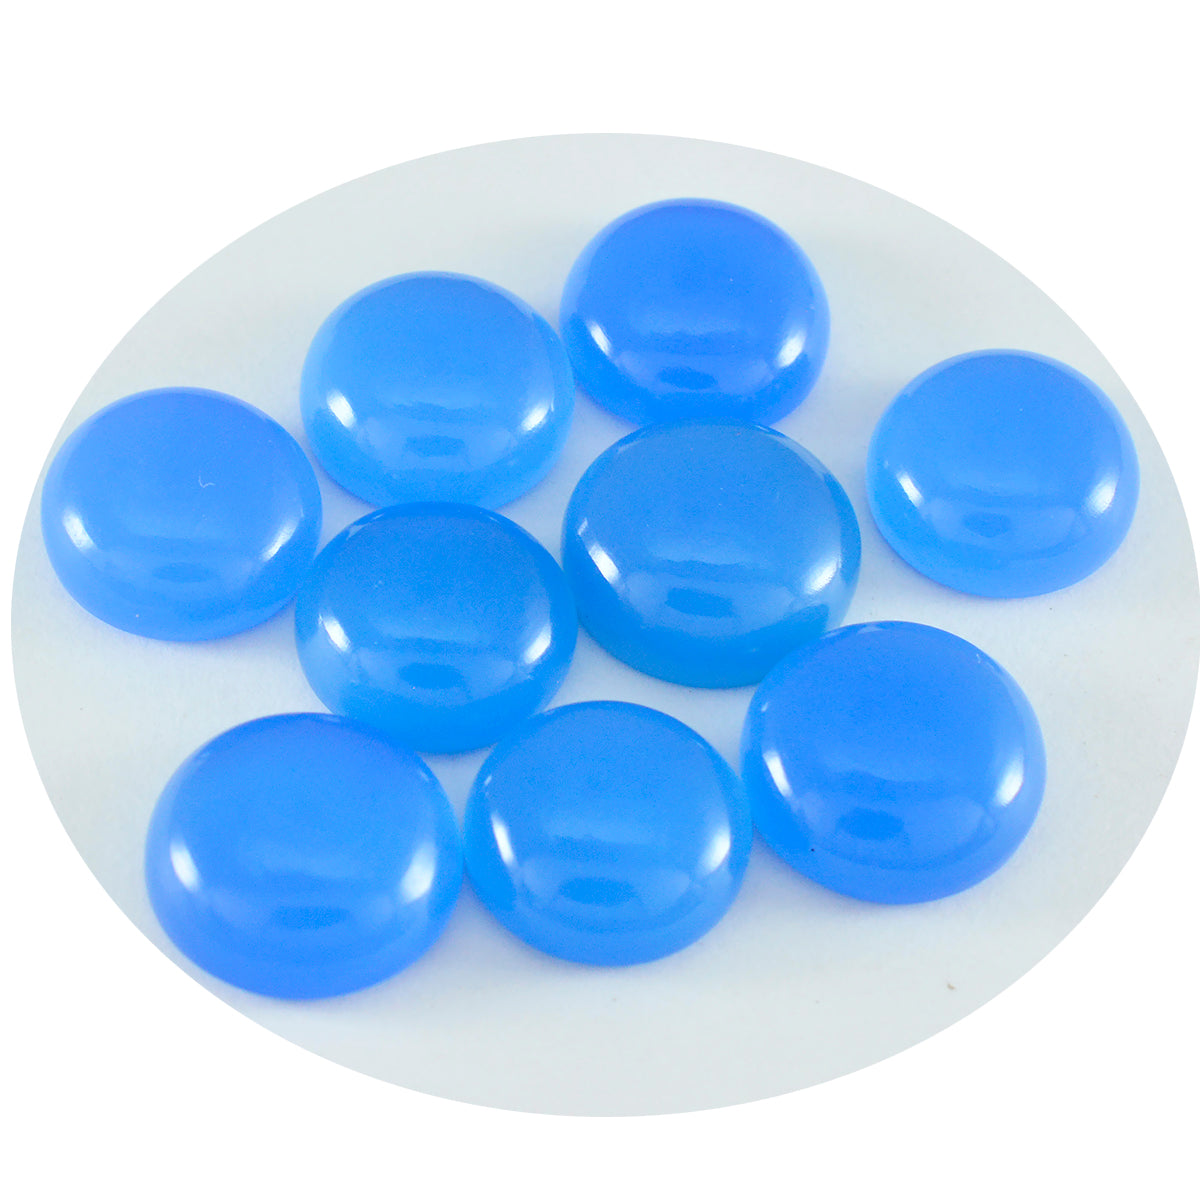 Riyogems 1 pc cabochon calcédoine bleue 6x6 mm forme ronde pierres précieuses de bonne qualité